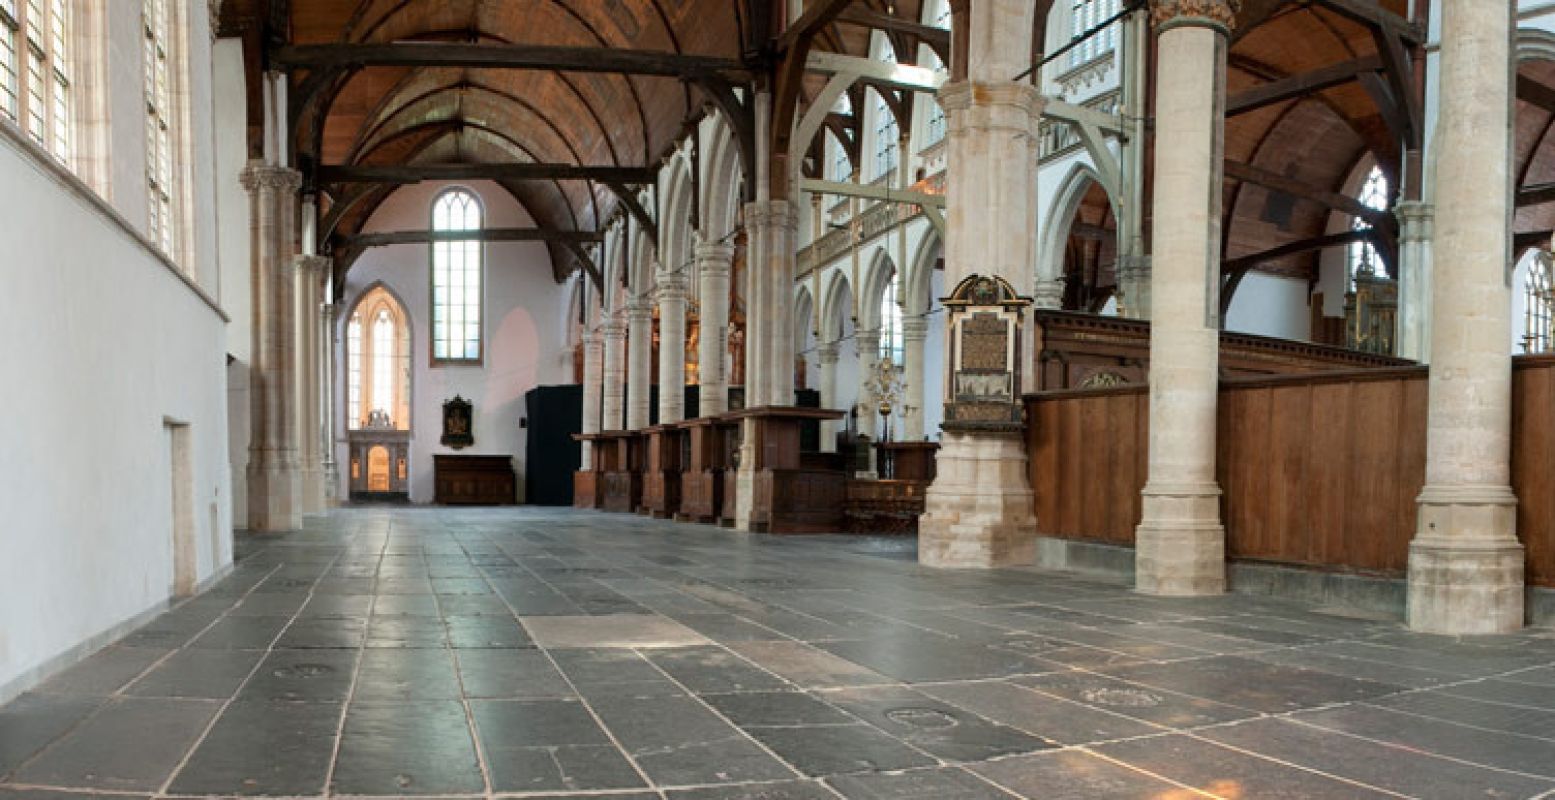 Interieur Oude Kerk Amsterdam. Foto: Piet Musters